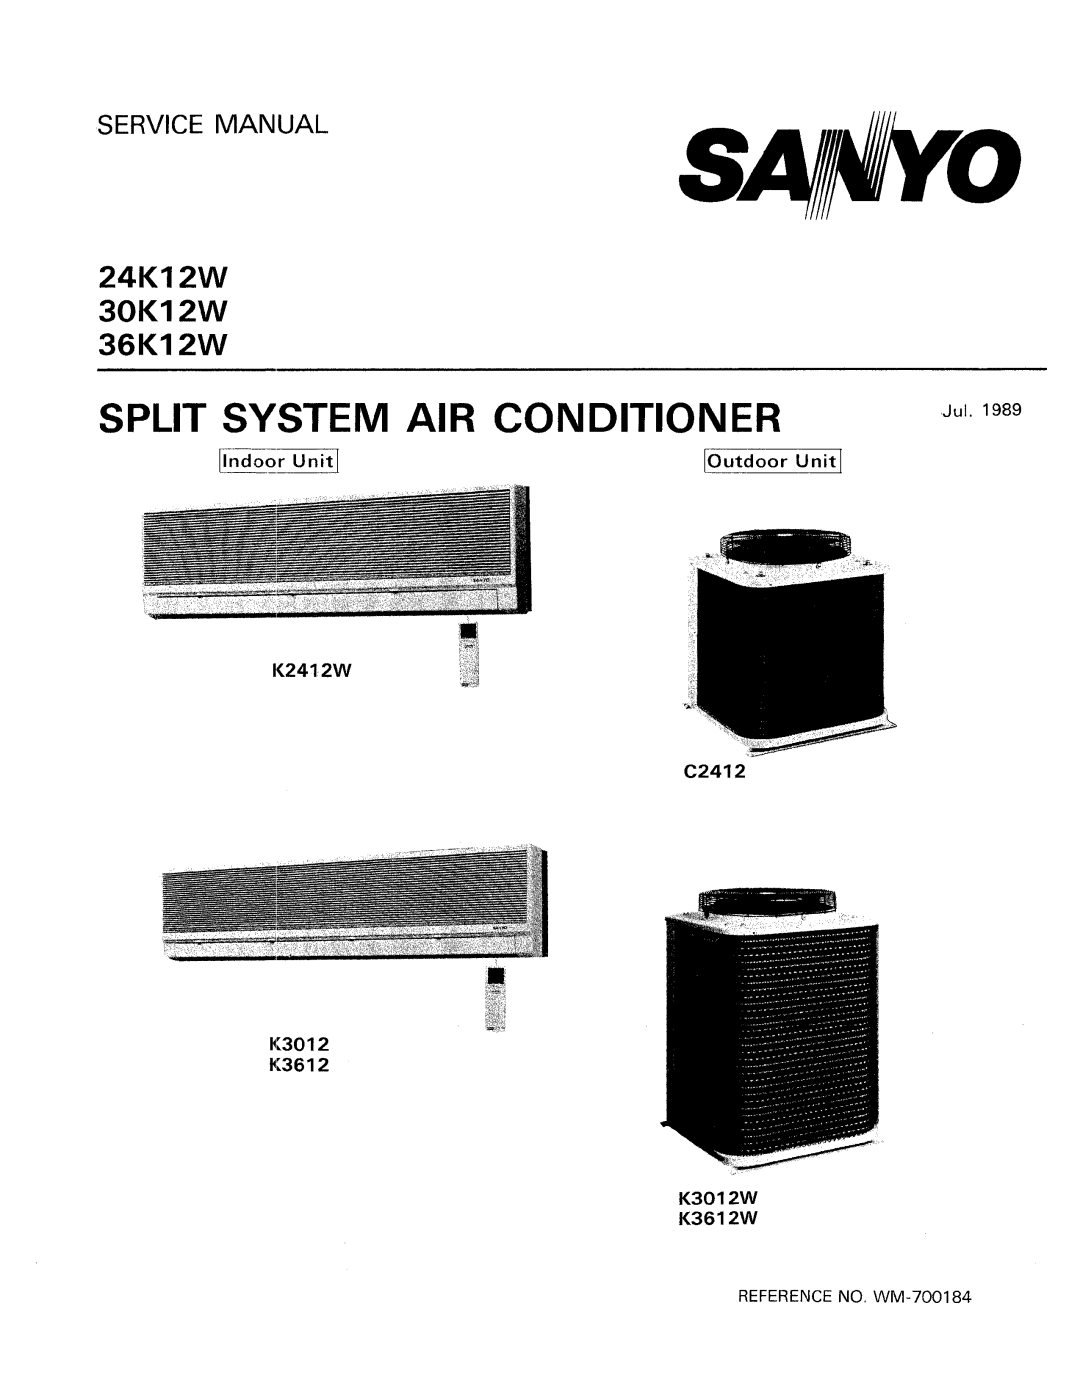 Sanyo 24K12W, 36K12W, 30K12W manual 